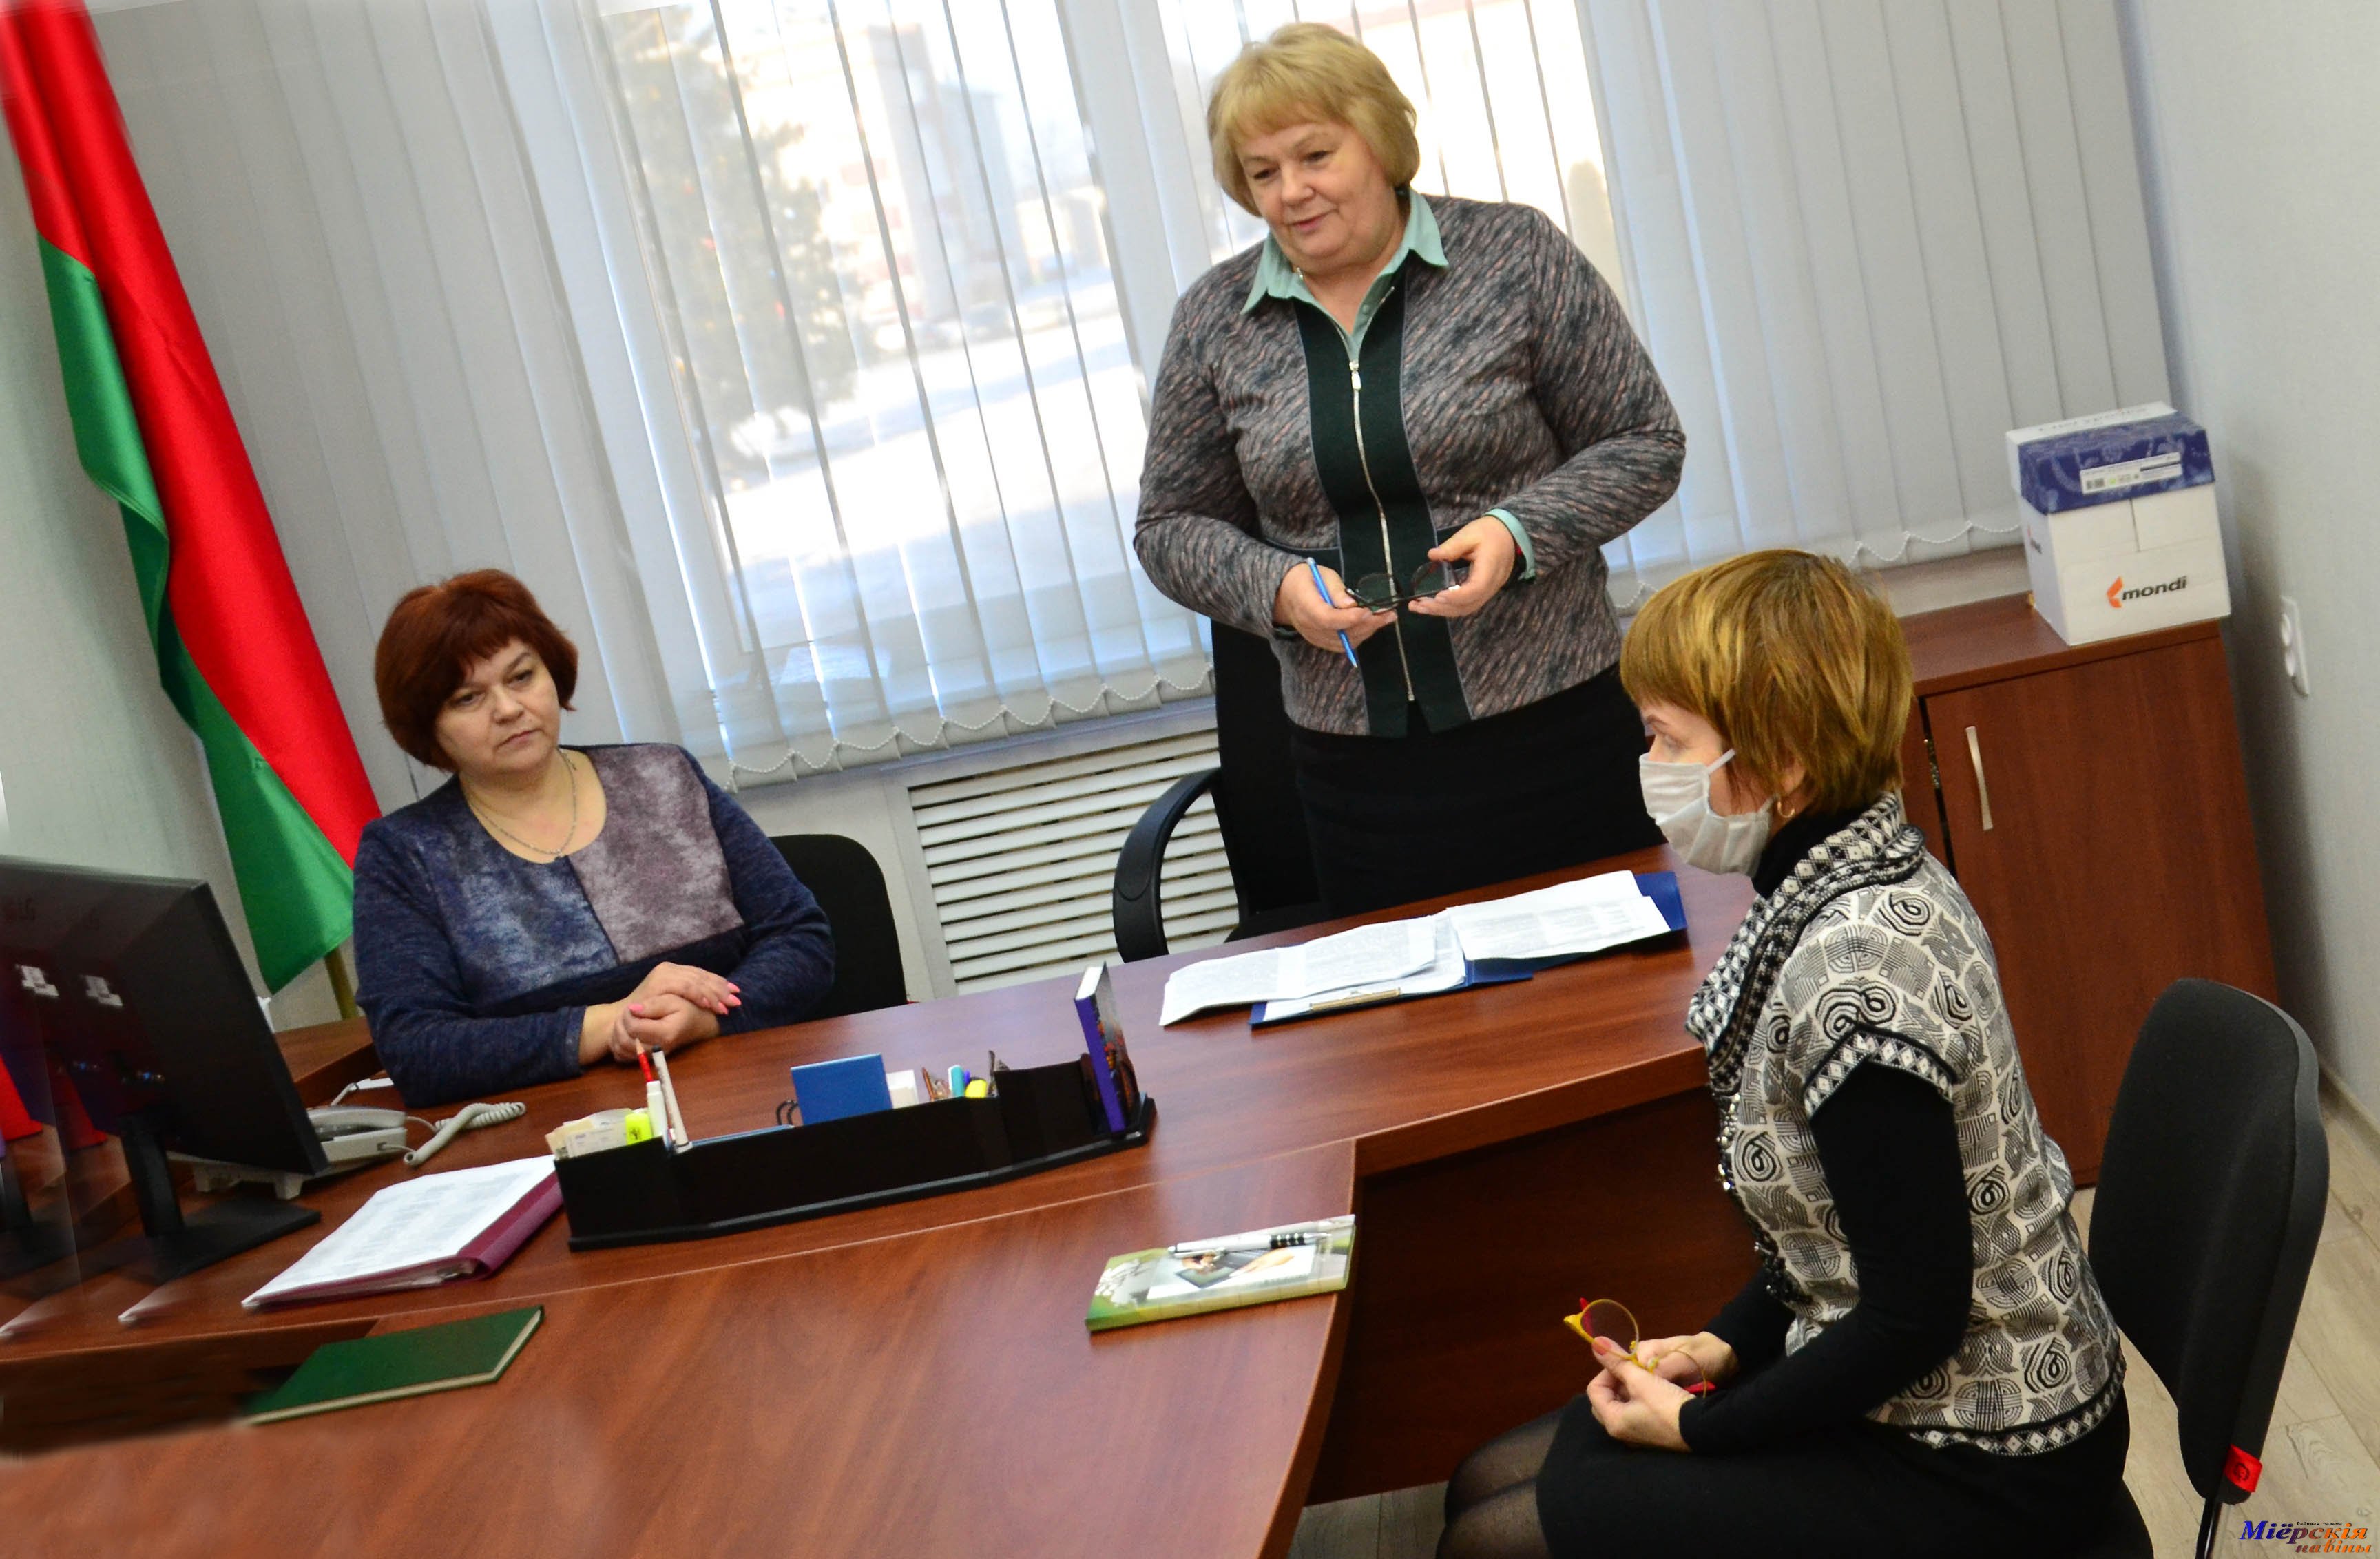 Председатель Совета депутатов Мария БАНИФАТОВА рассказала о социально-экономическом развитии Миорщины